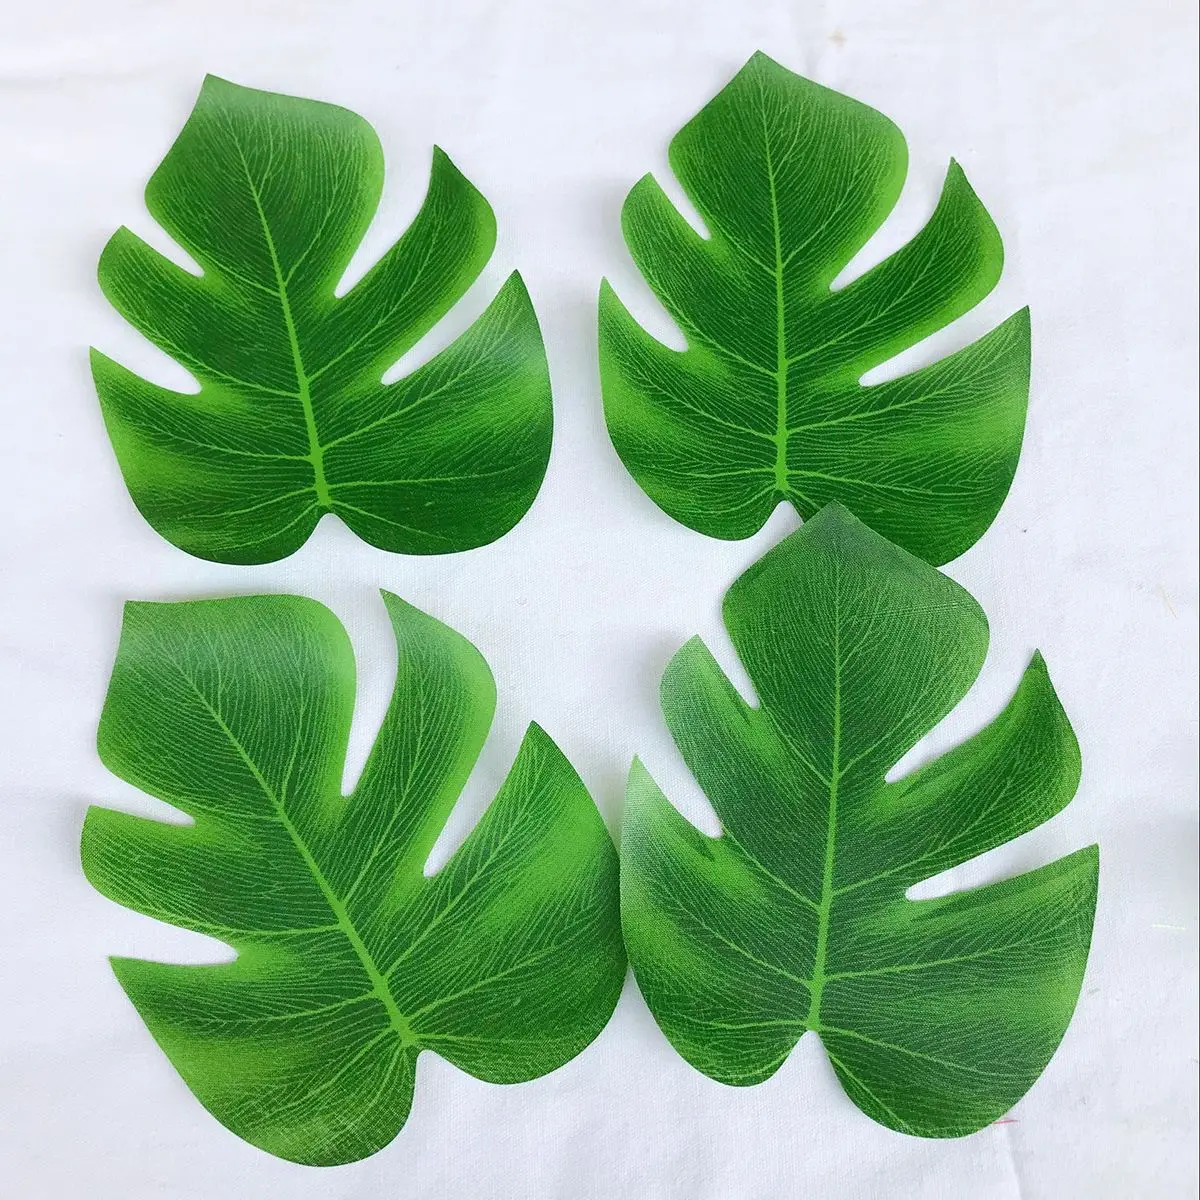 30 шт. 8 дюймов моделирование черепаха лист набор зеленый лист Гавайи свадебные украшения стола вечерние принадлежности